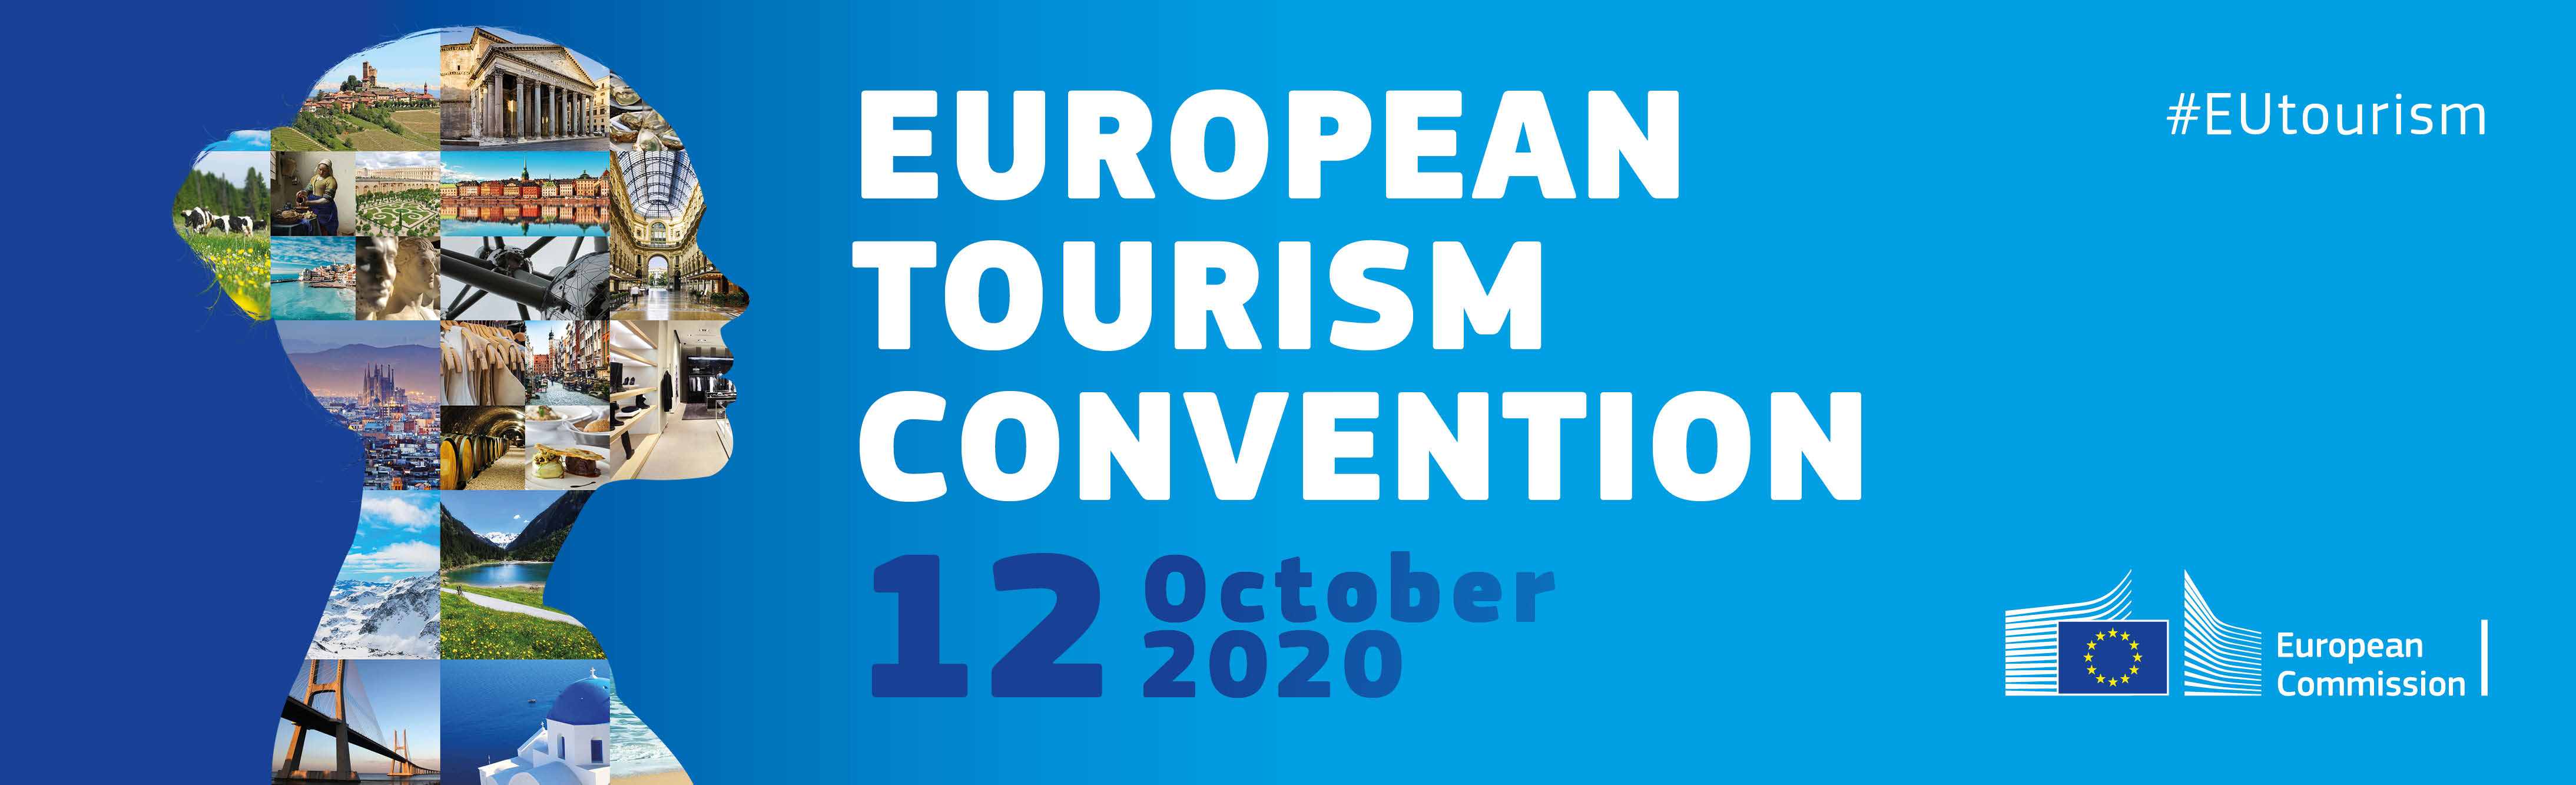 Convención Europea de Turismo